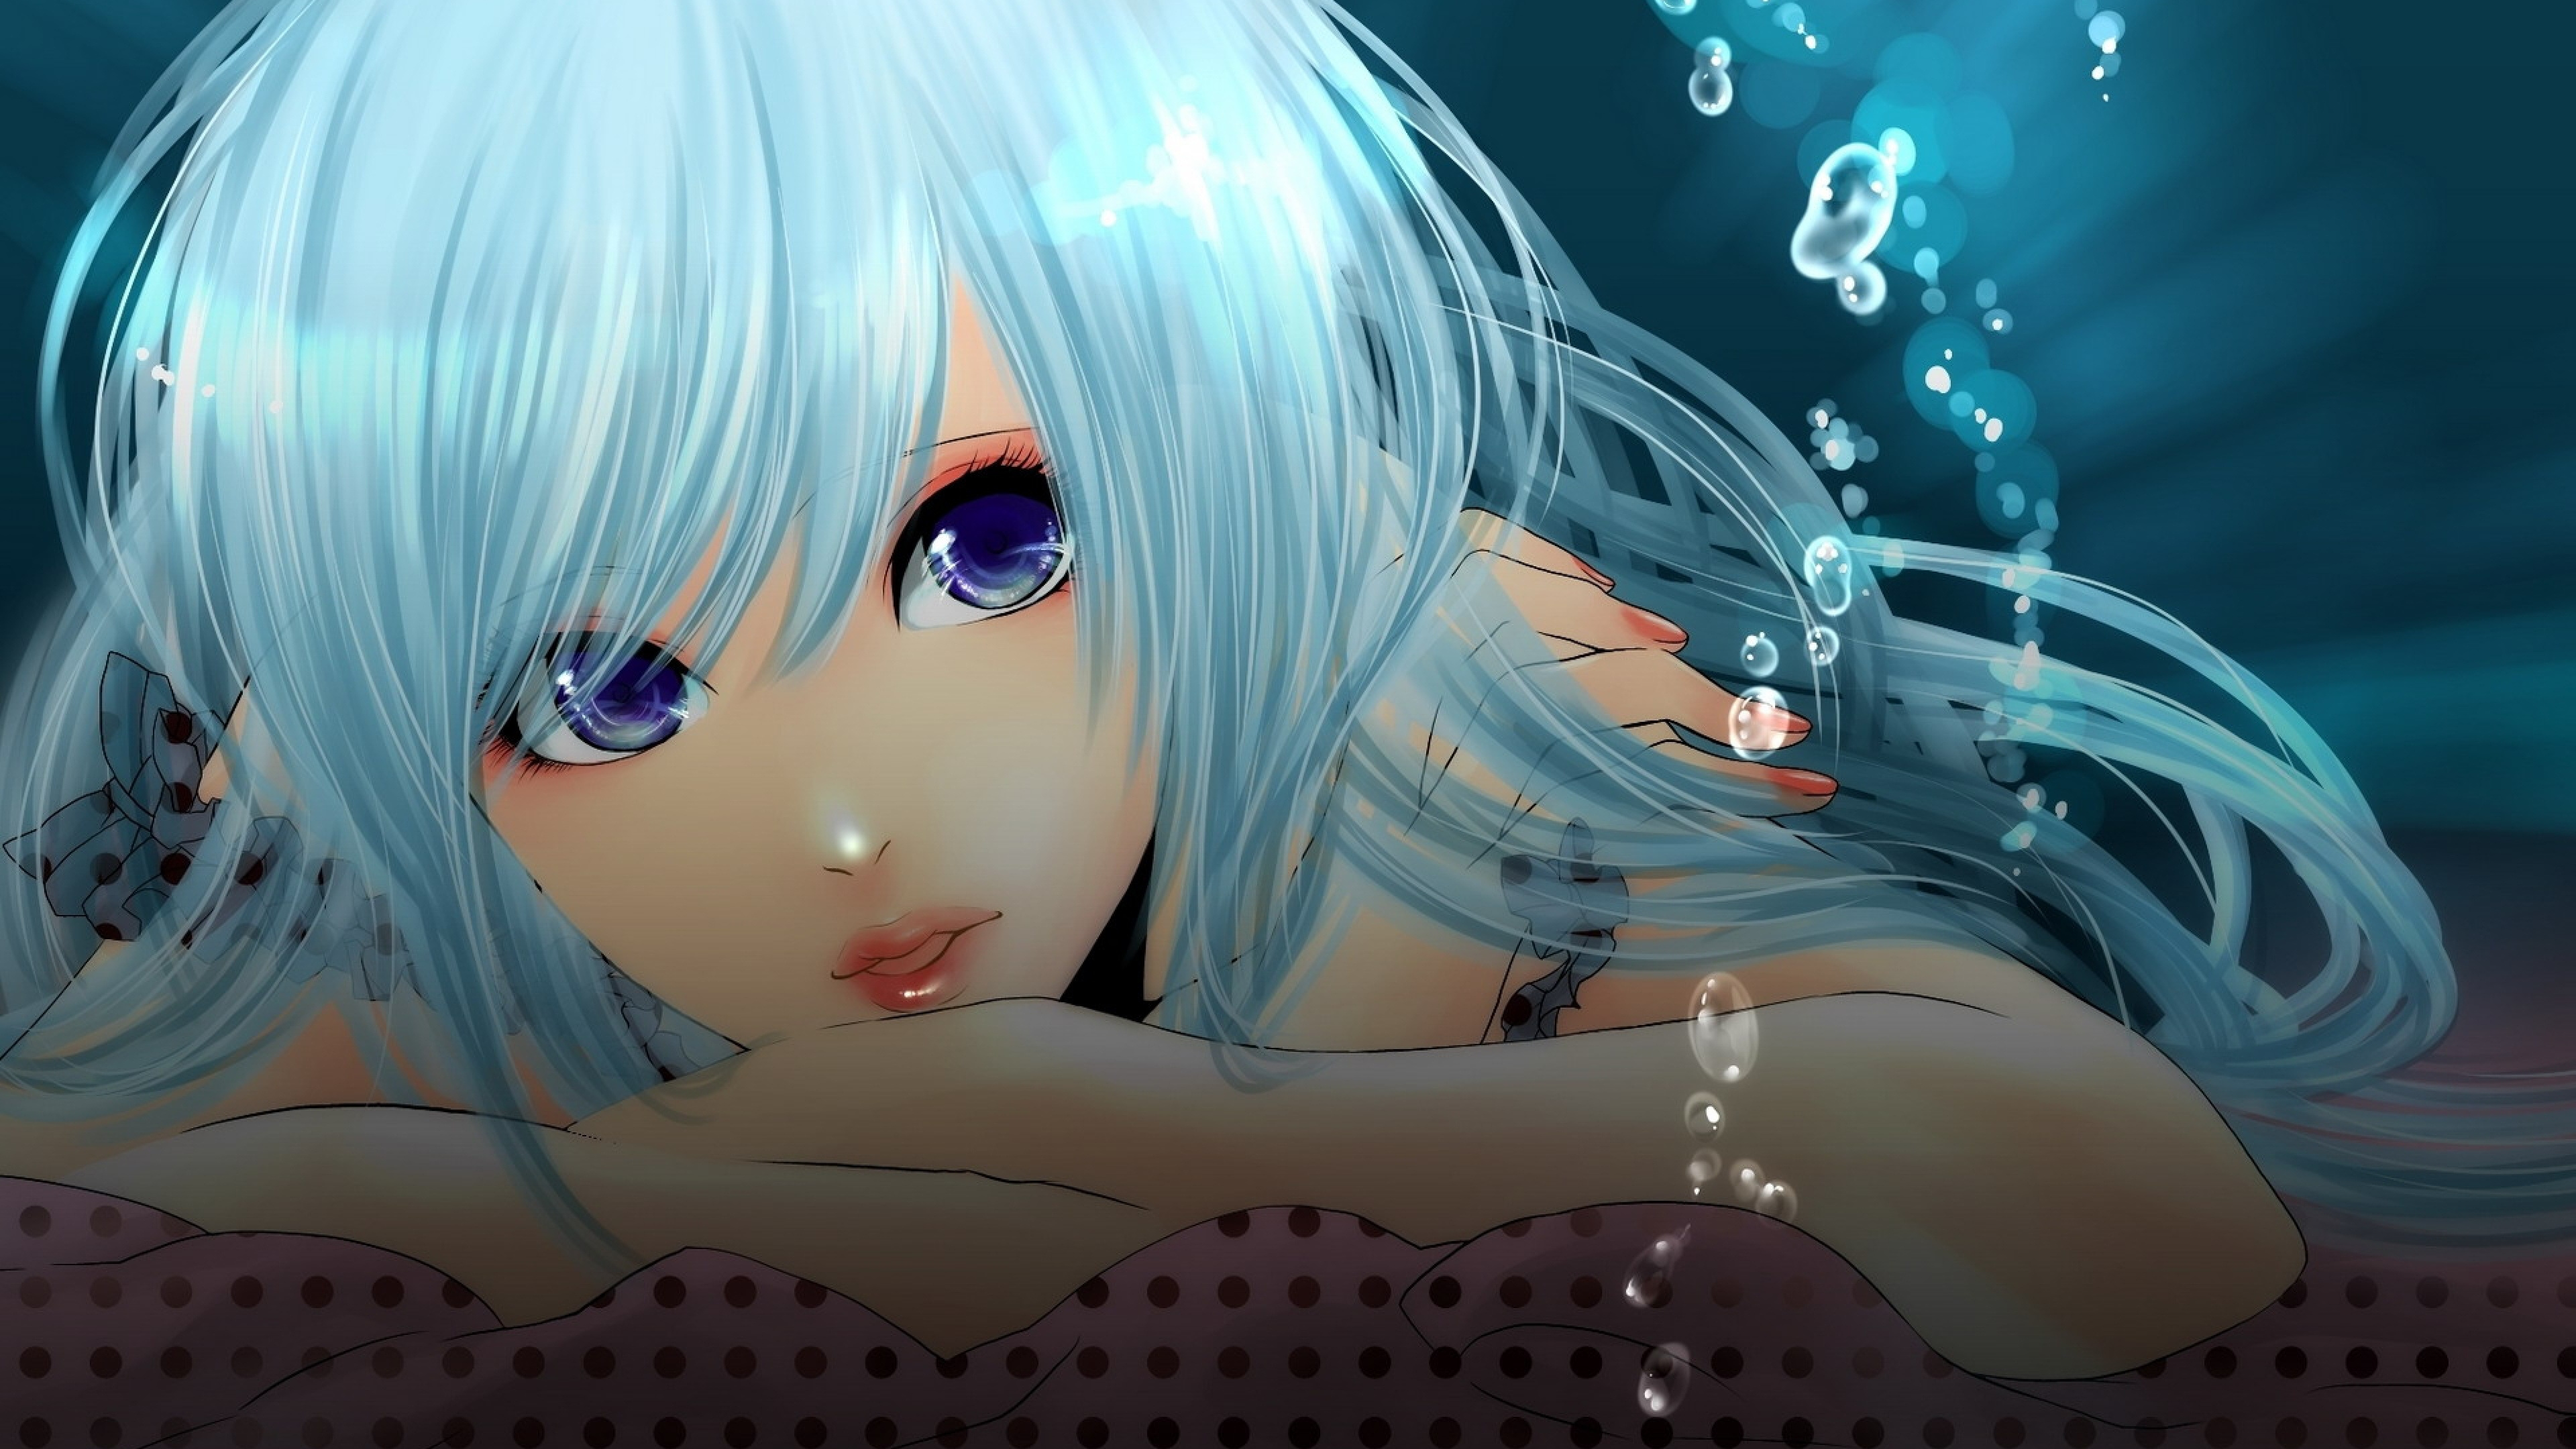 Personnage D'anime Féminin Aux Cheveux Bleus. Wallpaper in 3840x2160 Resolution